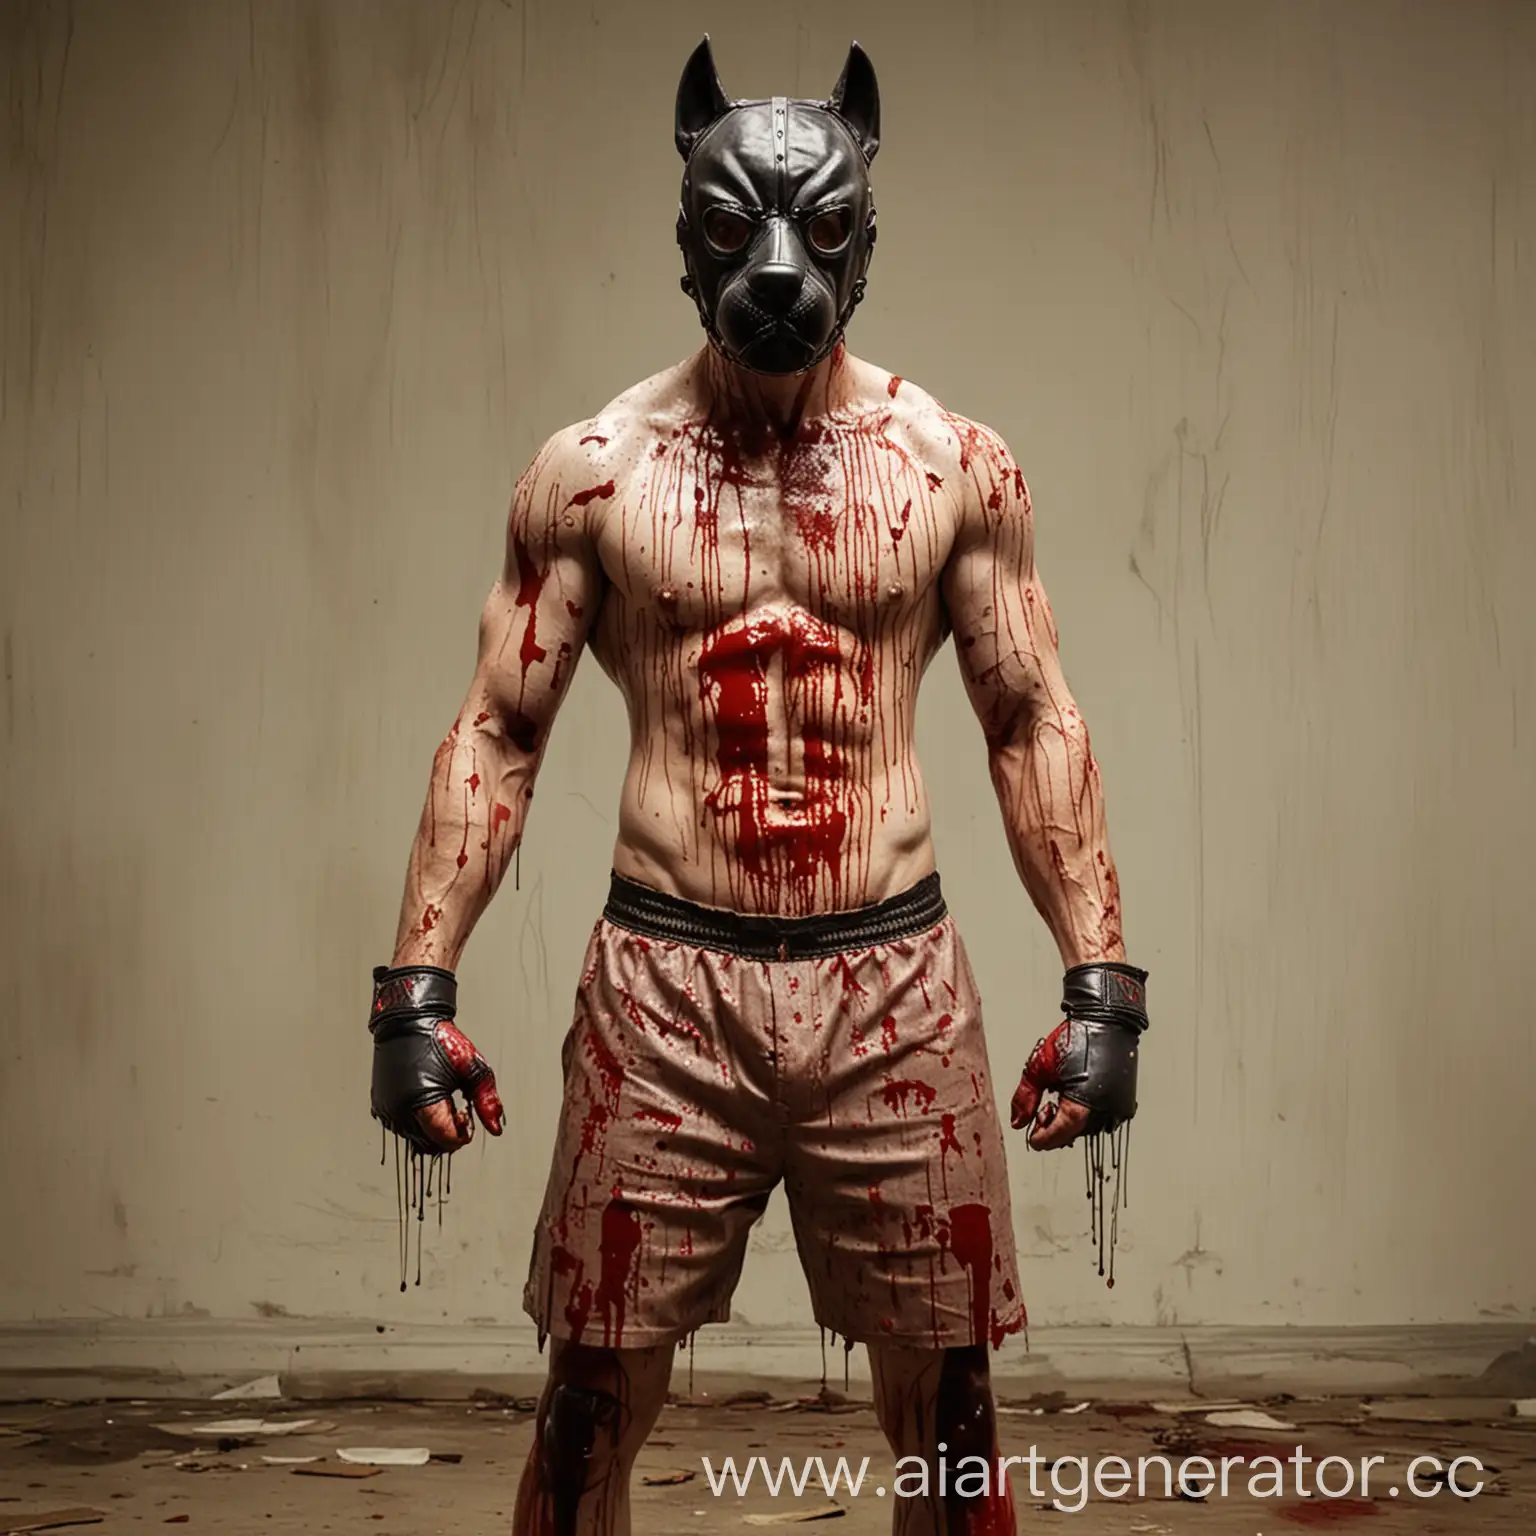 Хорошо накачанный человек в маске собаки стоит в боксерской стойке весь в крови